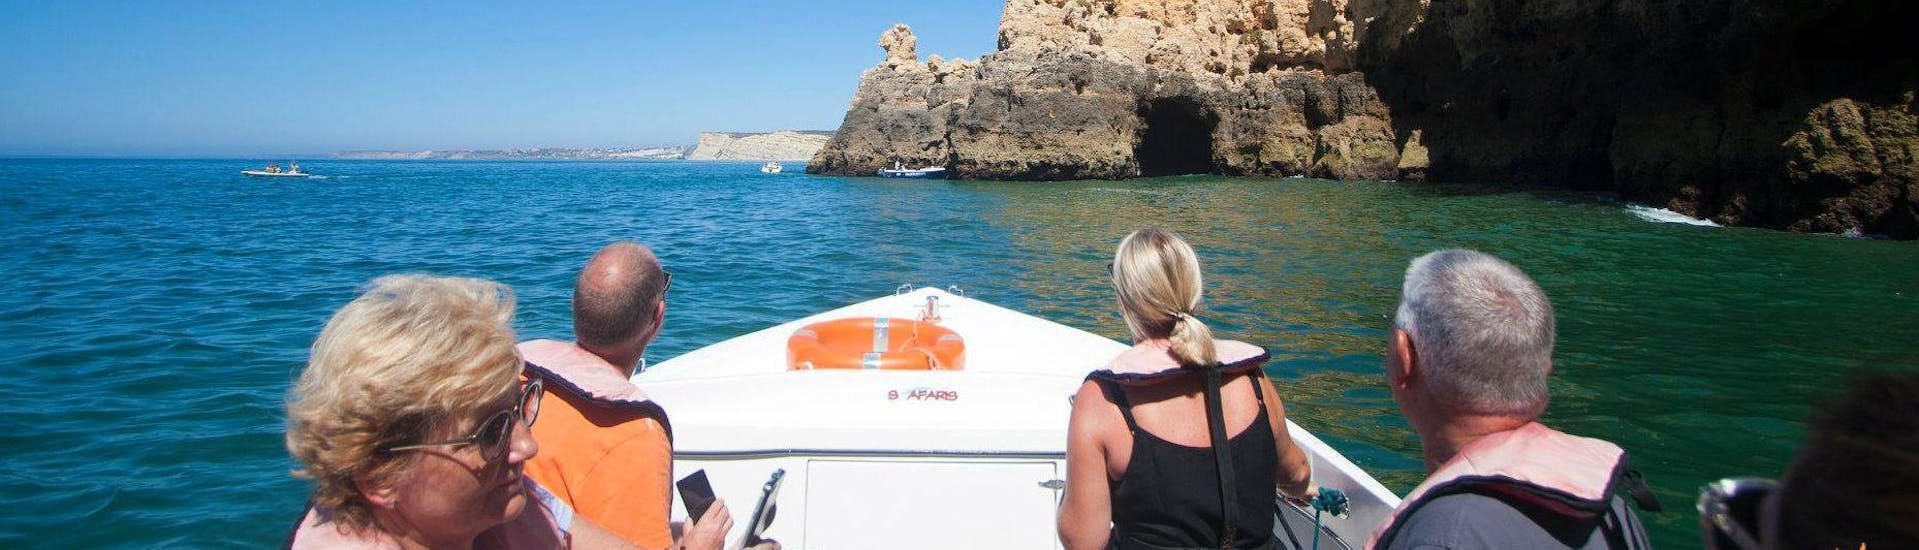 Durante el viaje en barco a Ponta da Piedade desde Lagos con Seafaris Algarve, los pasajeros disfrutan de la vista de las singulares formaciones rocosas.